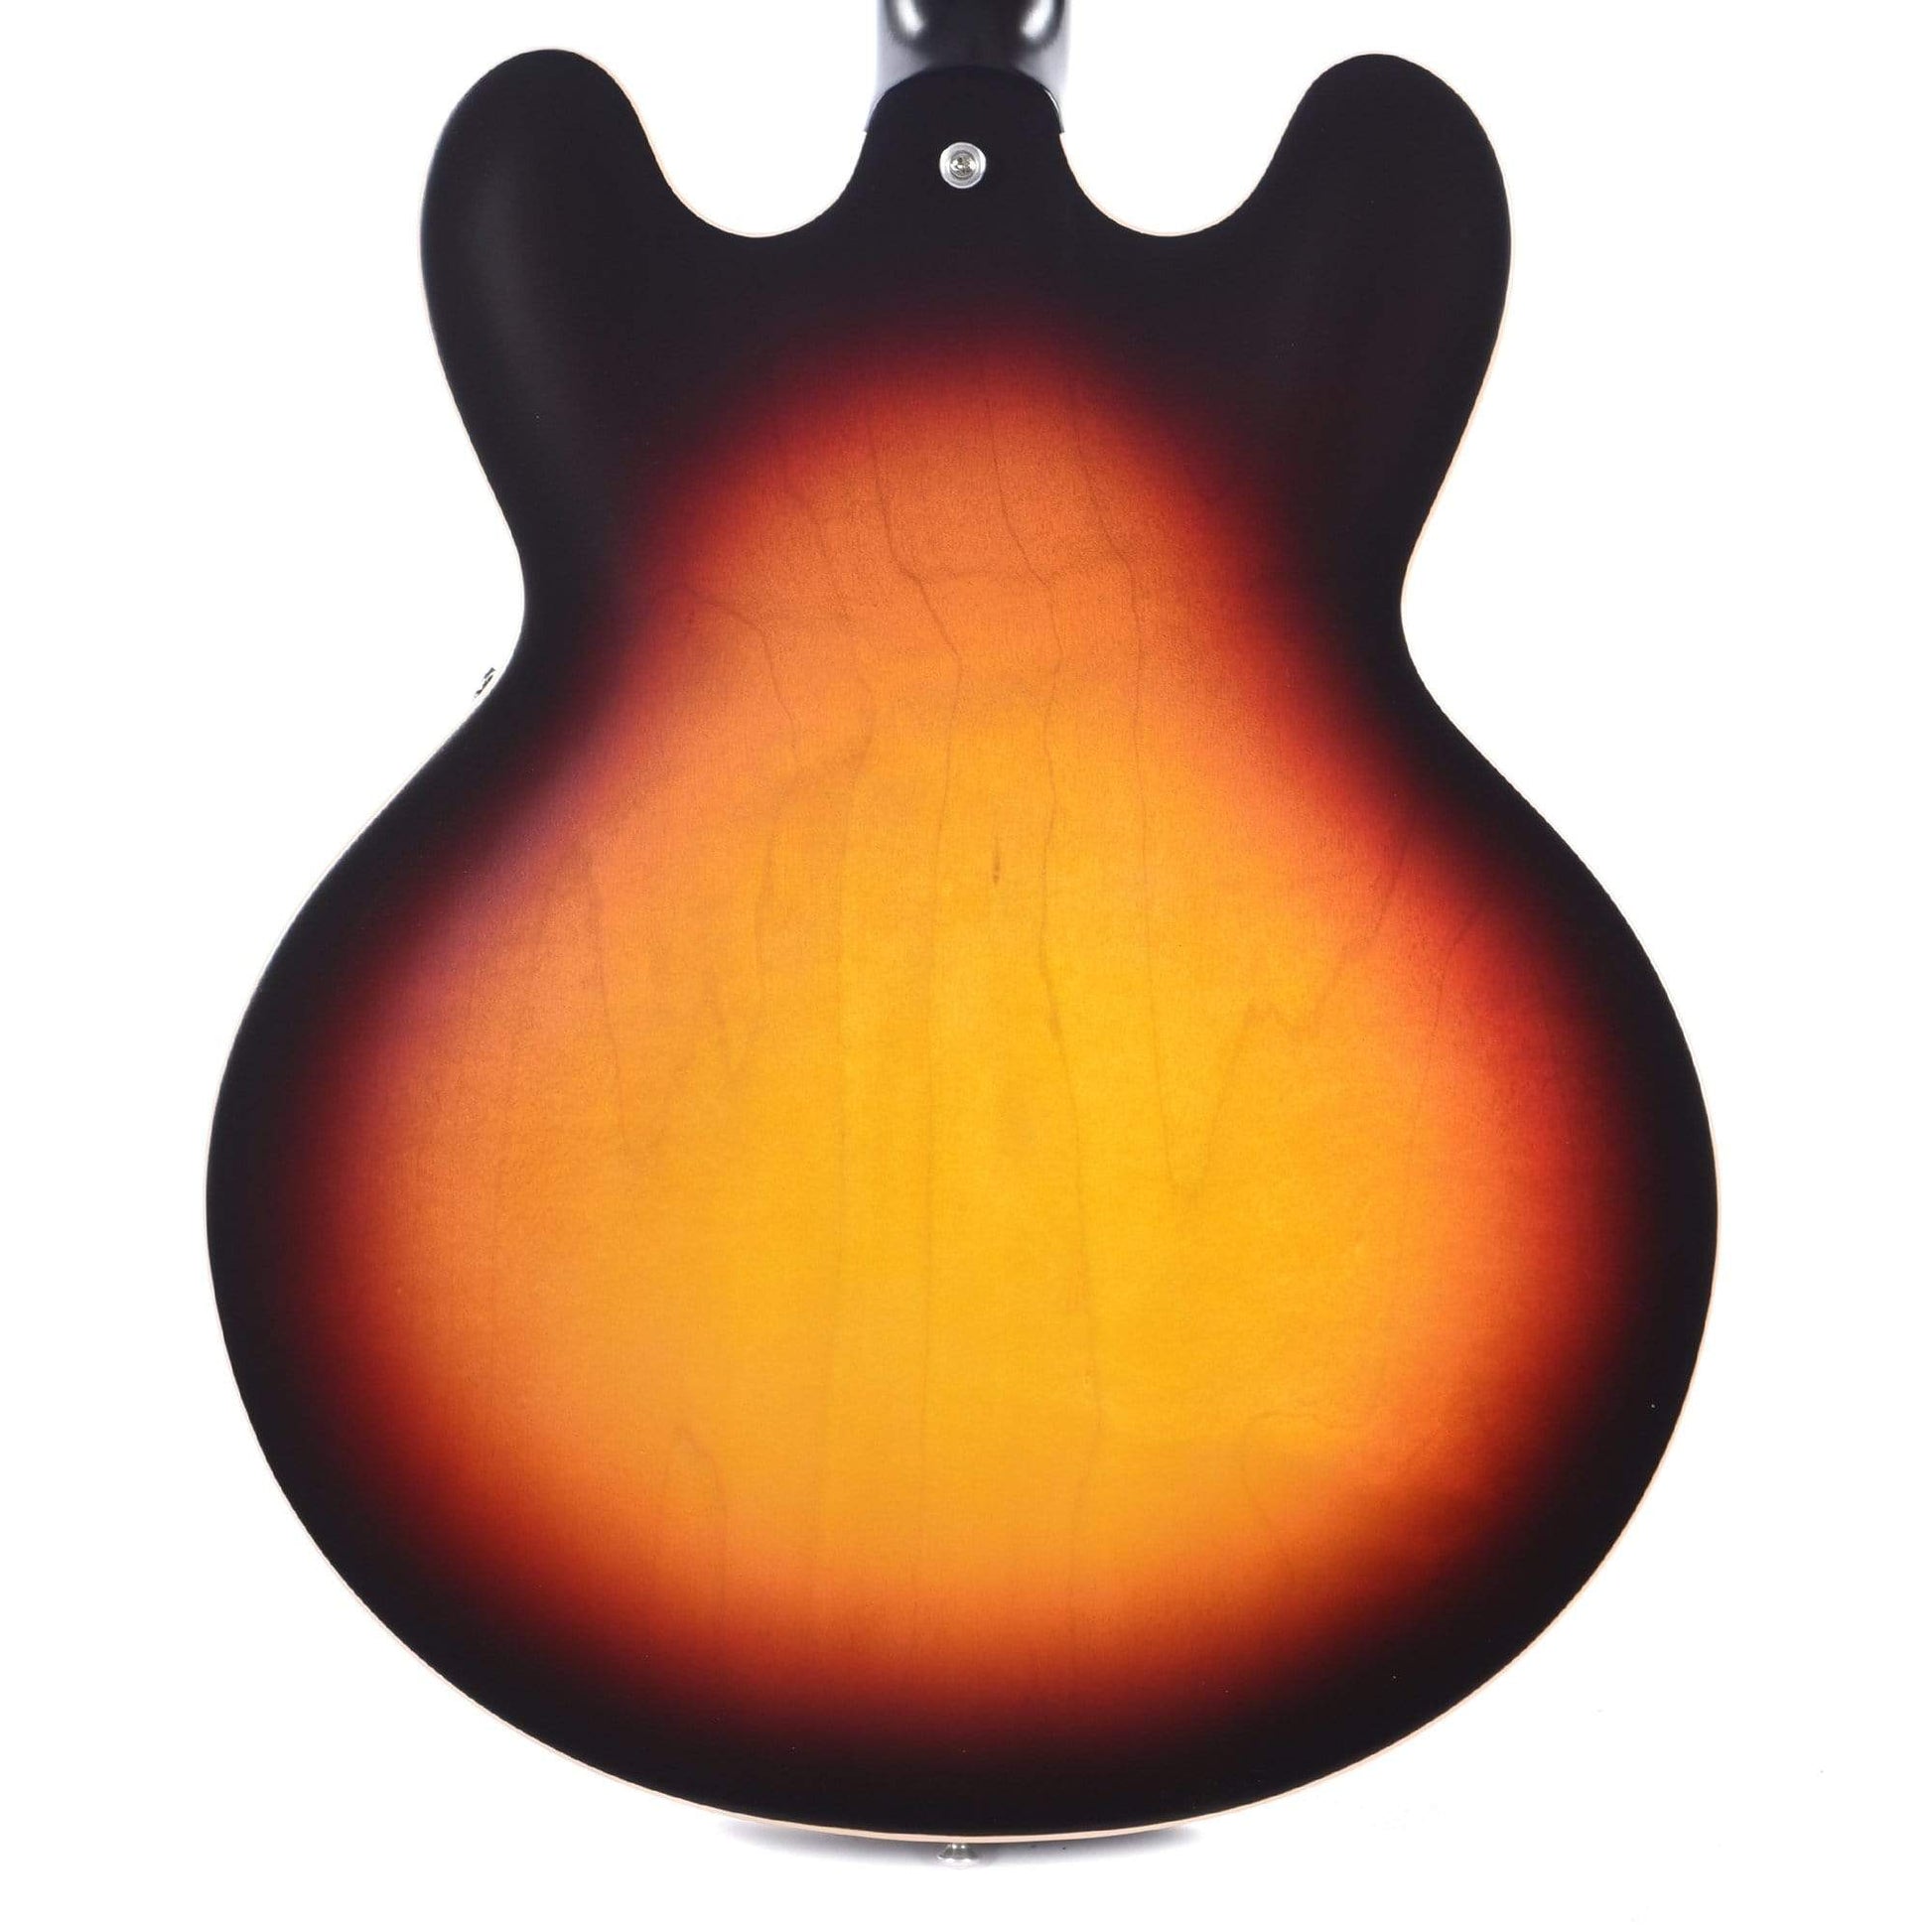 Gibson Memphis ES-335 Satin Sunset Burst Electric Guitars / Semi-Hollow